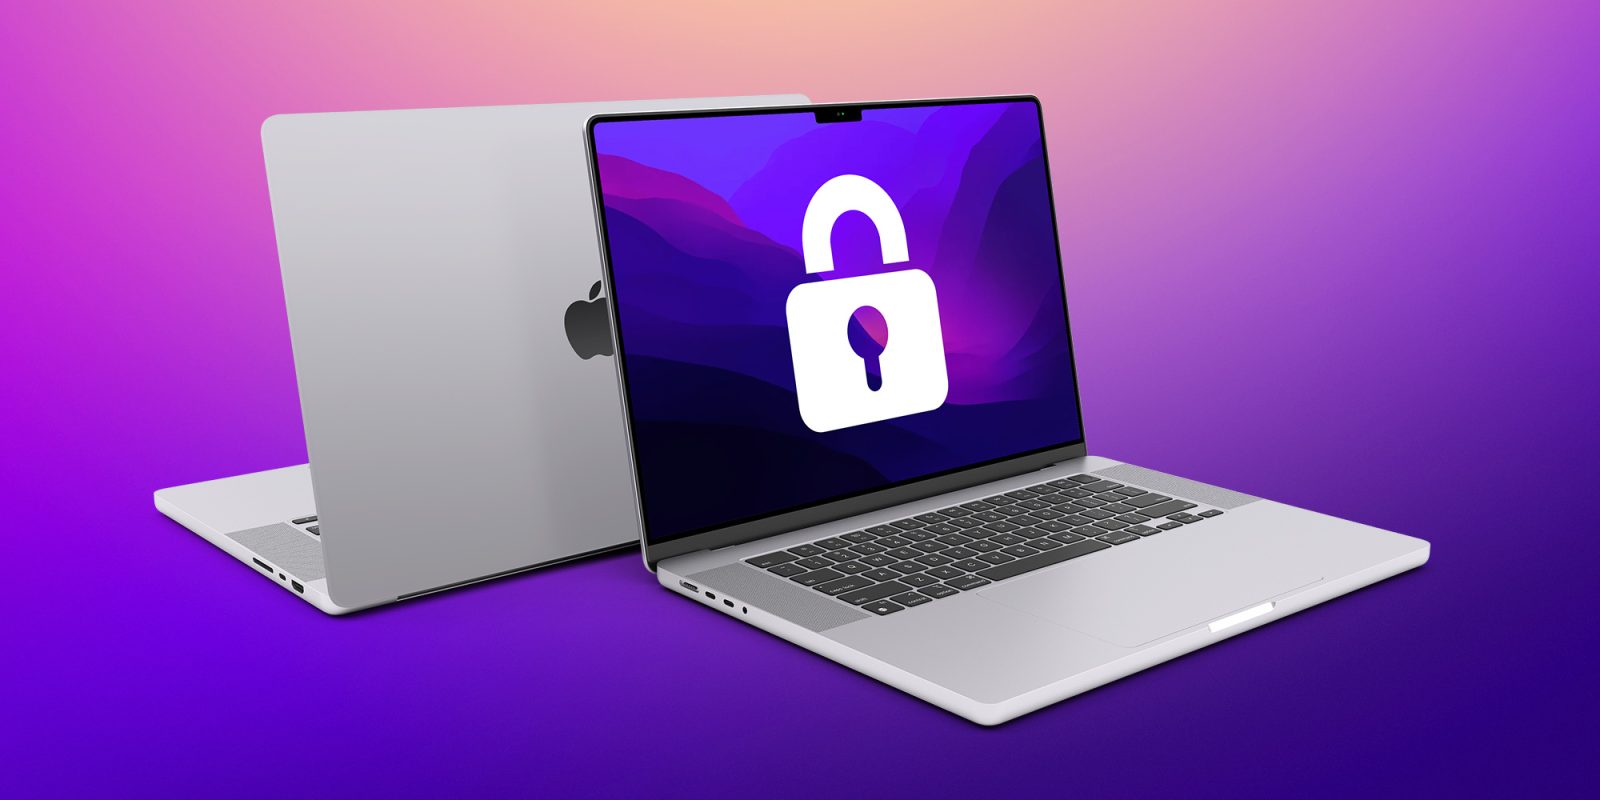 Сообщается, что в этом году Apple представила серьезные внутренние обновления безопасности для macOS.